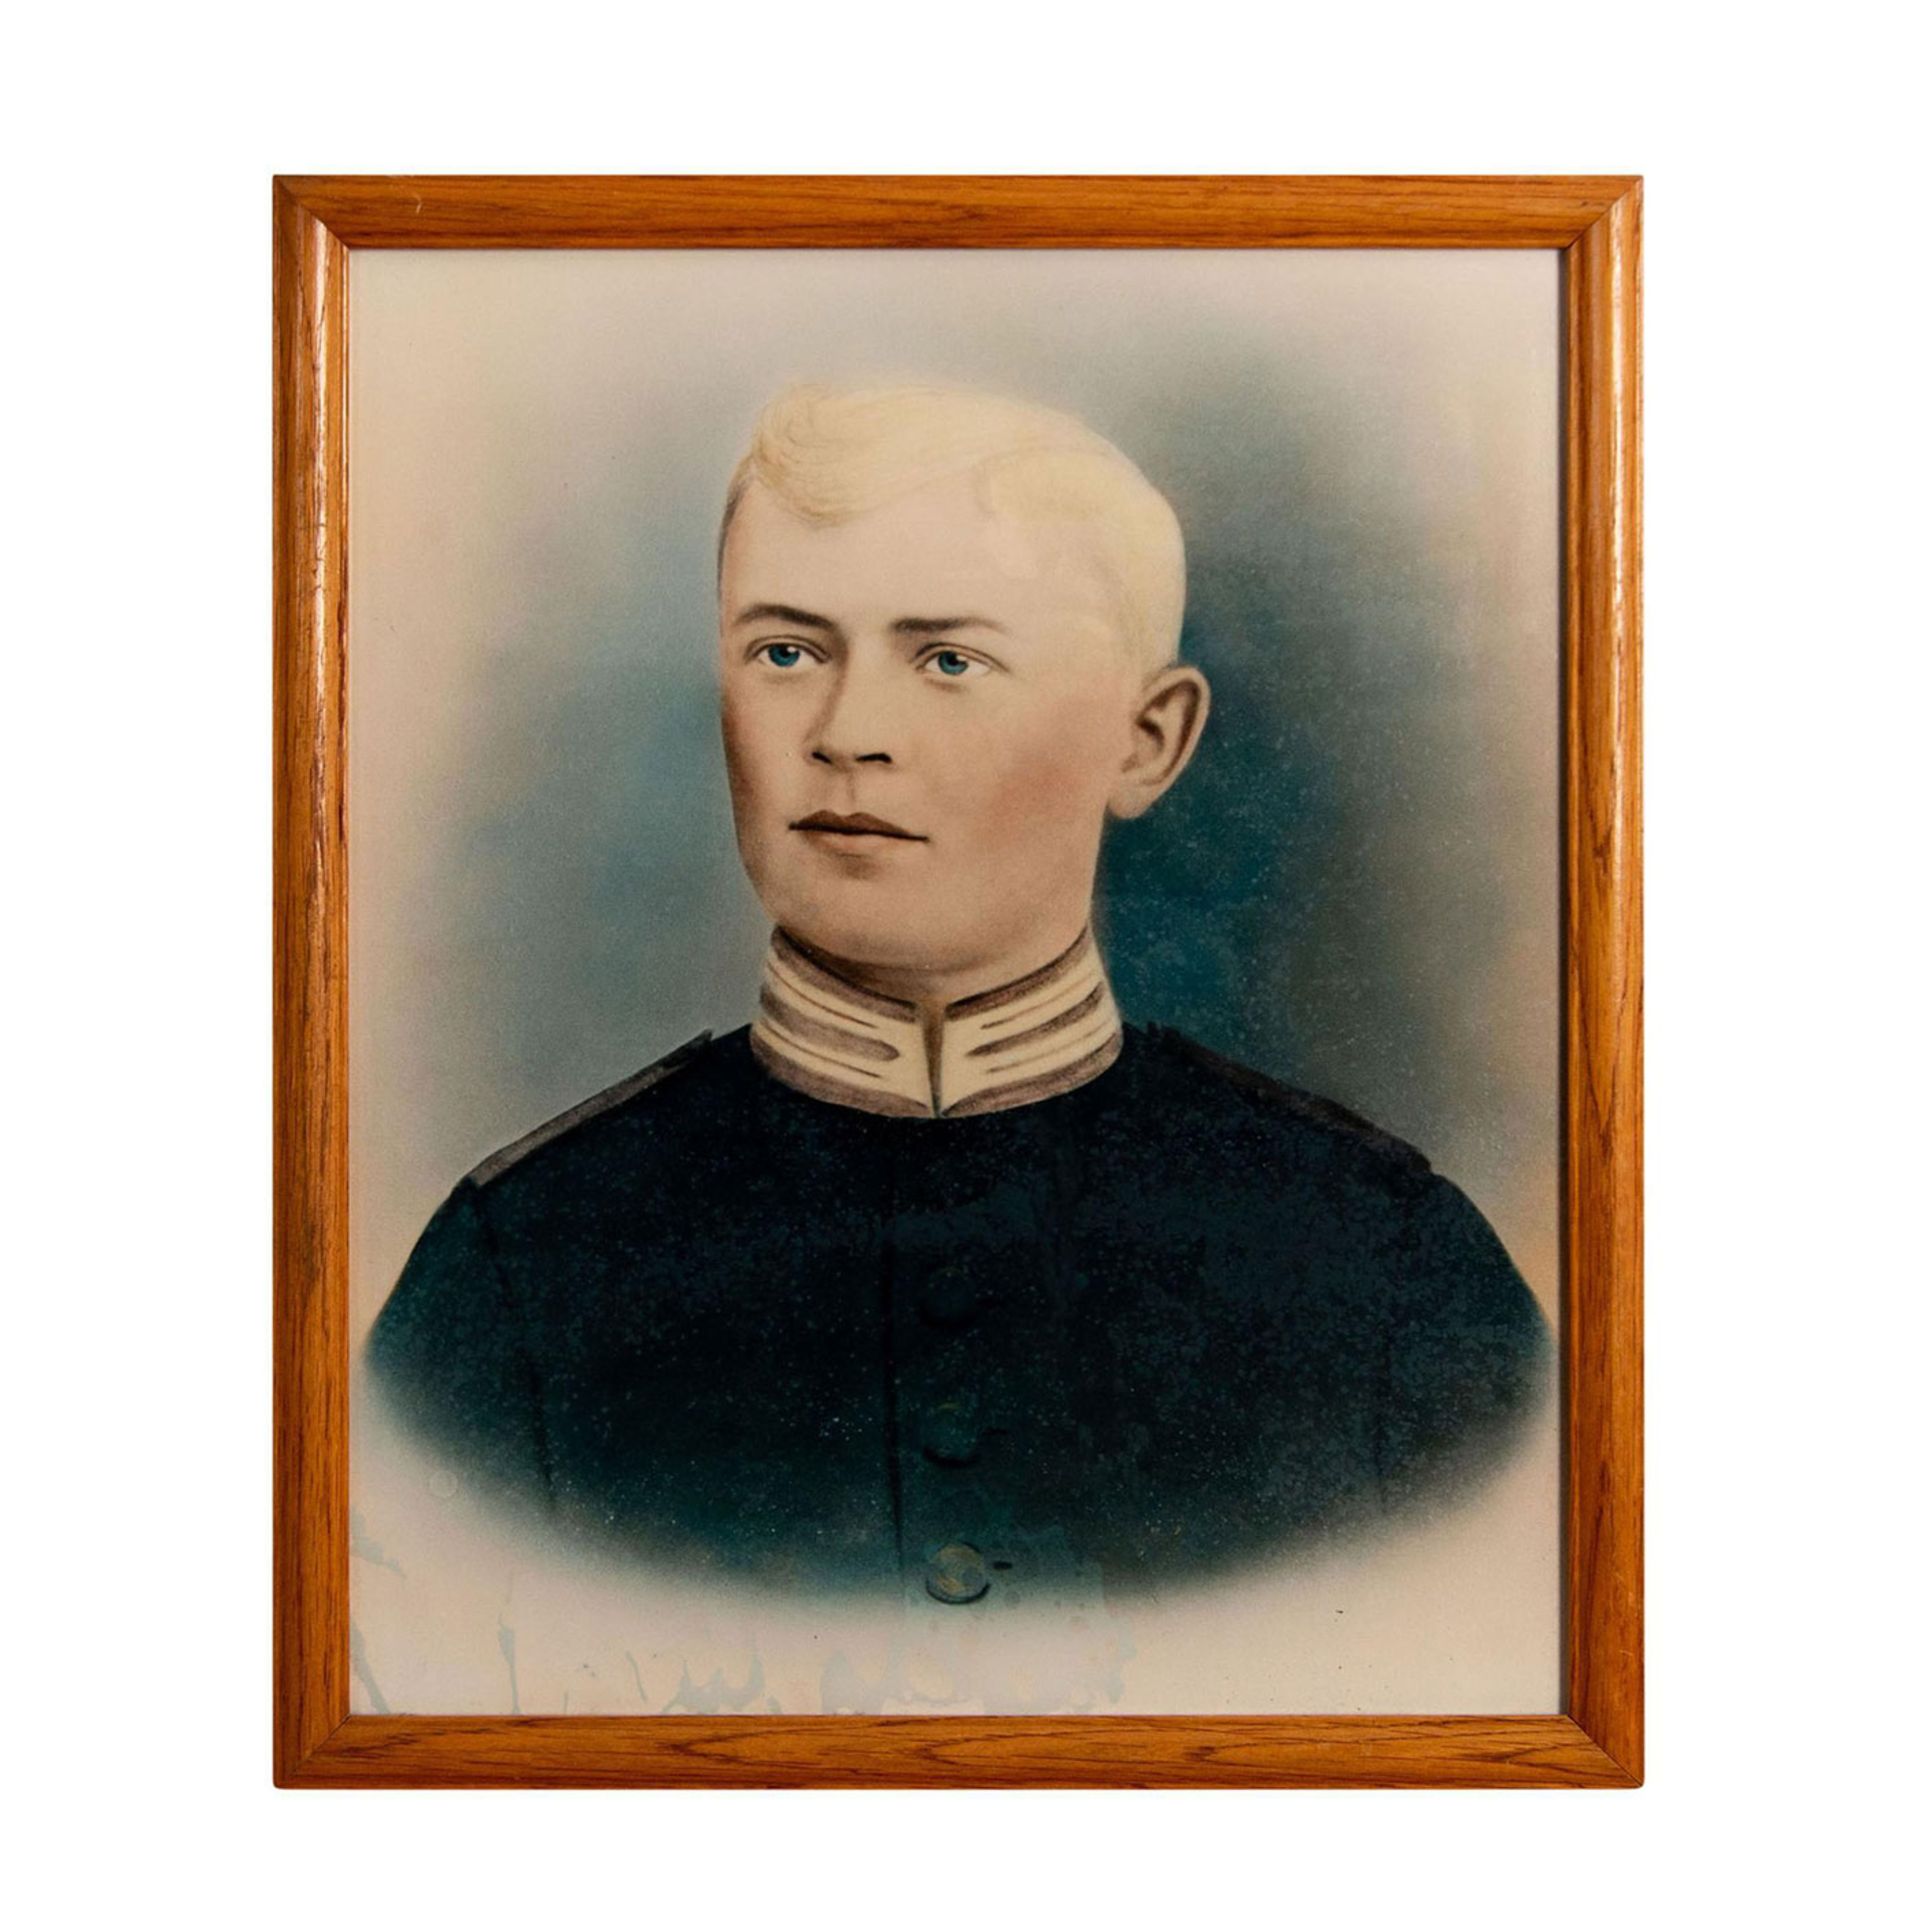 Photographic Print of a Antique Portrait